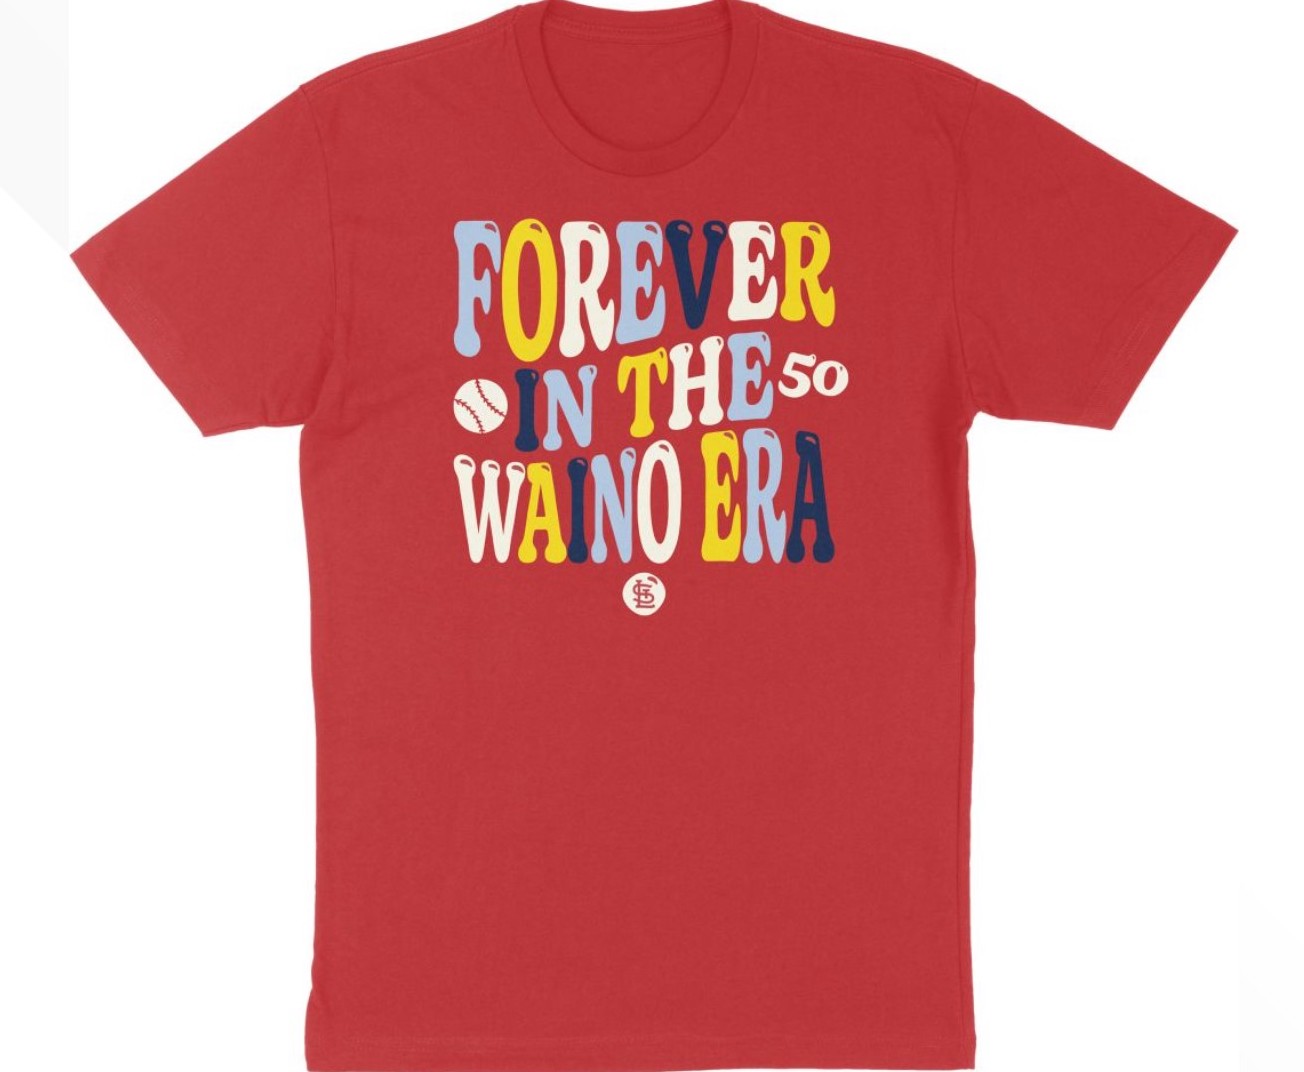 Adam Wainwright The Stadium Tour Forever In The 50 Waino Era T-Shirt